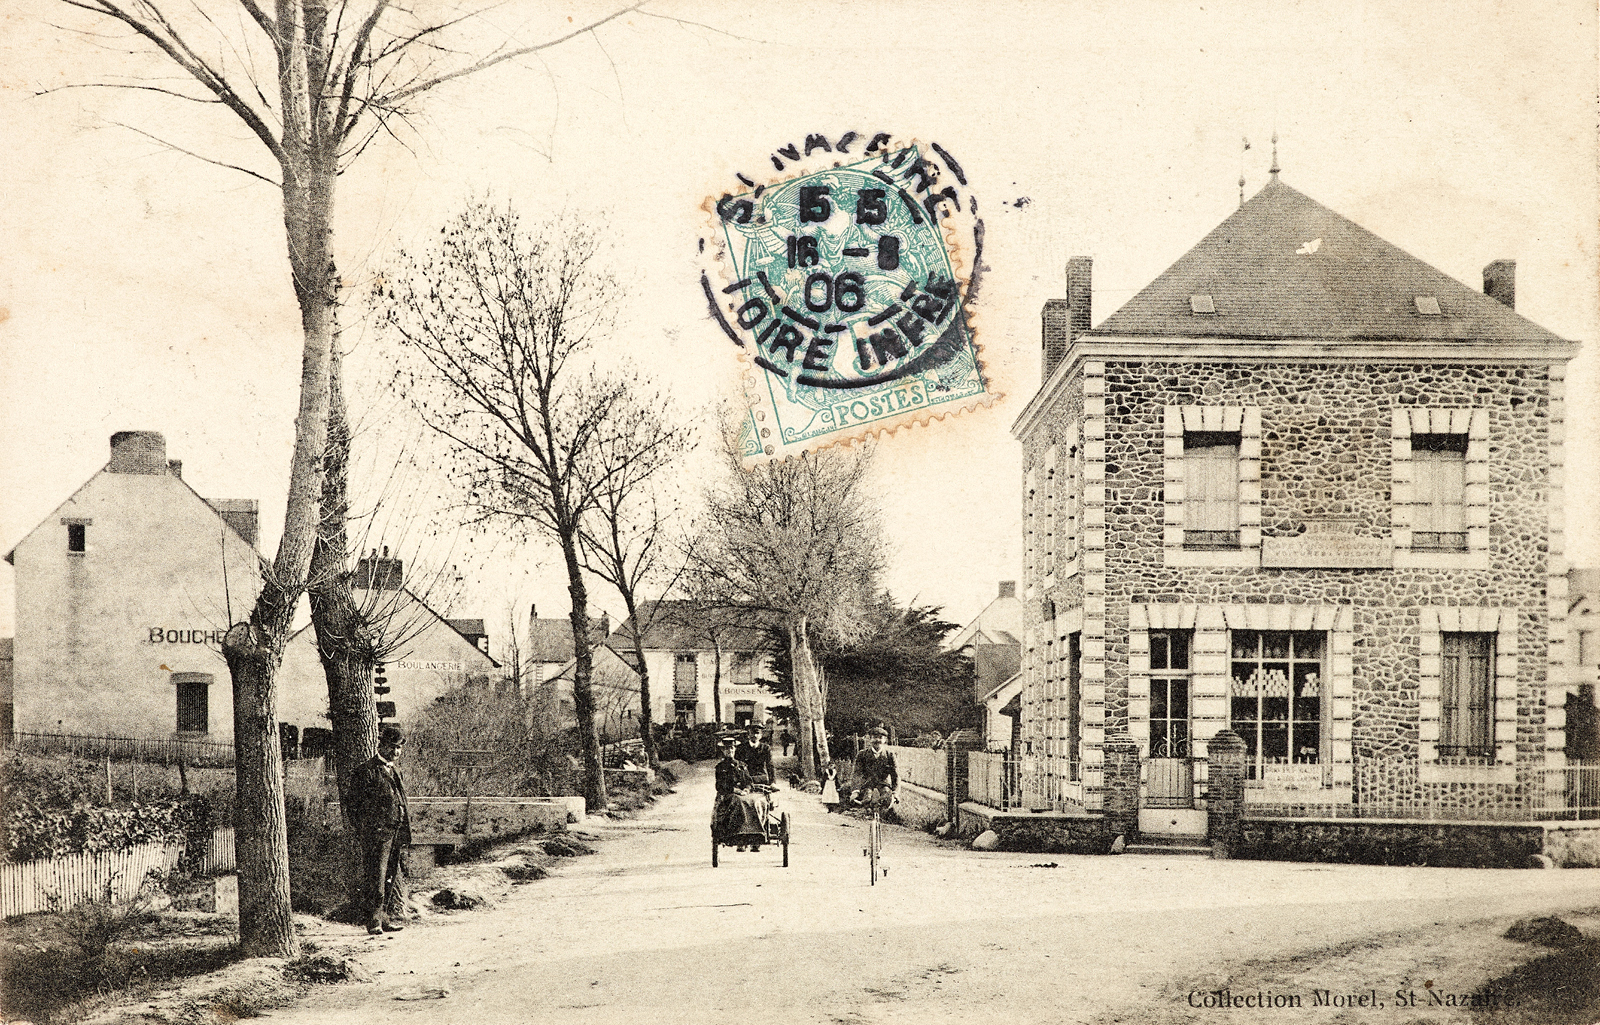 Carte postale timbrée du début du 20e siècle représentant une grande bâtisse carrée en pierre devant une route, sur celle-ci des piétons et des cyclistes.